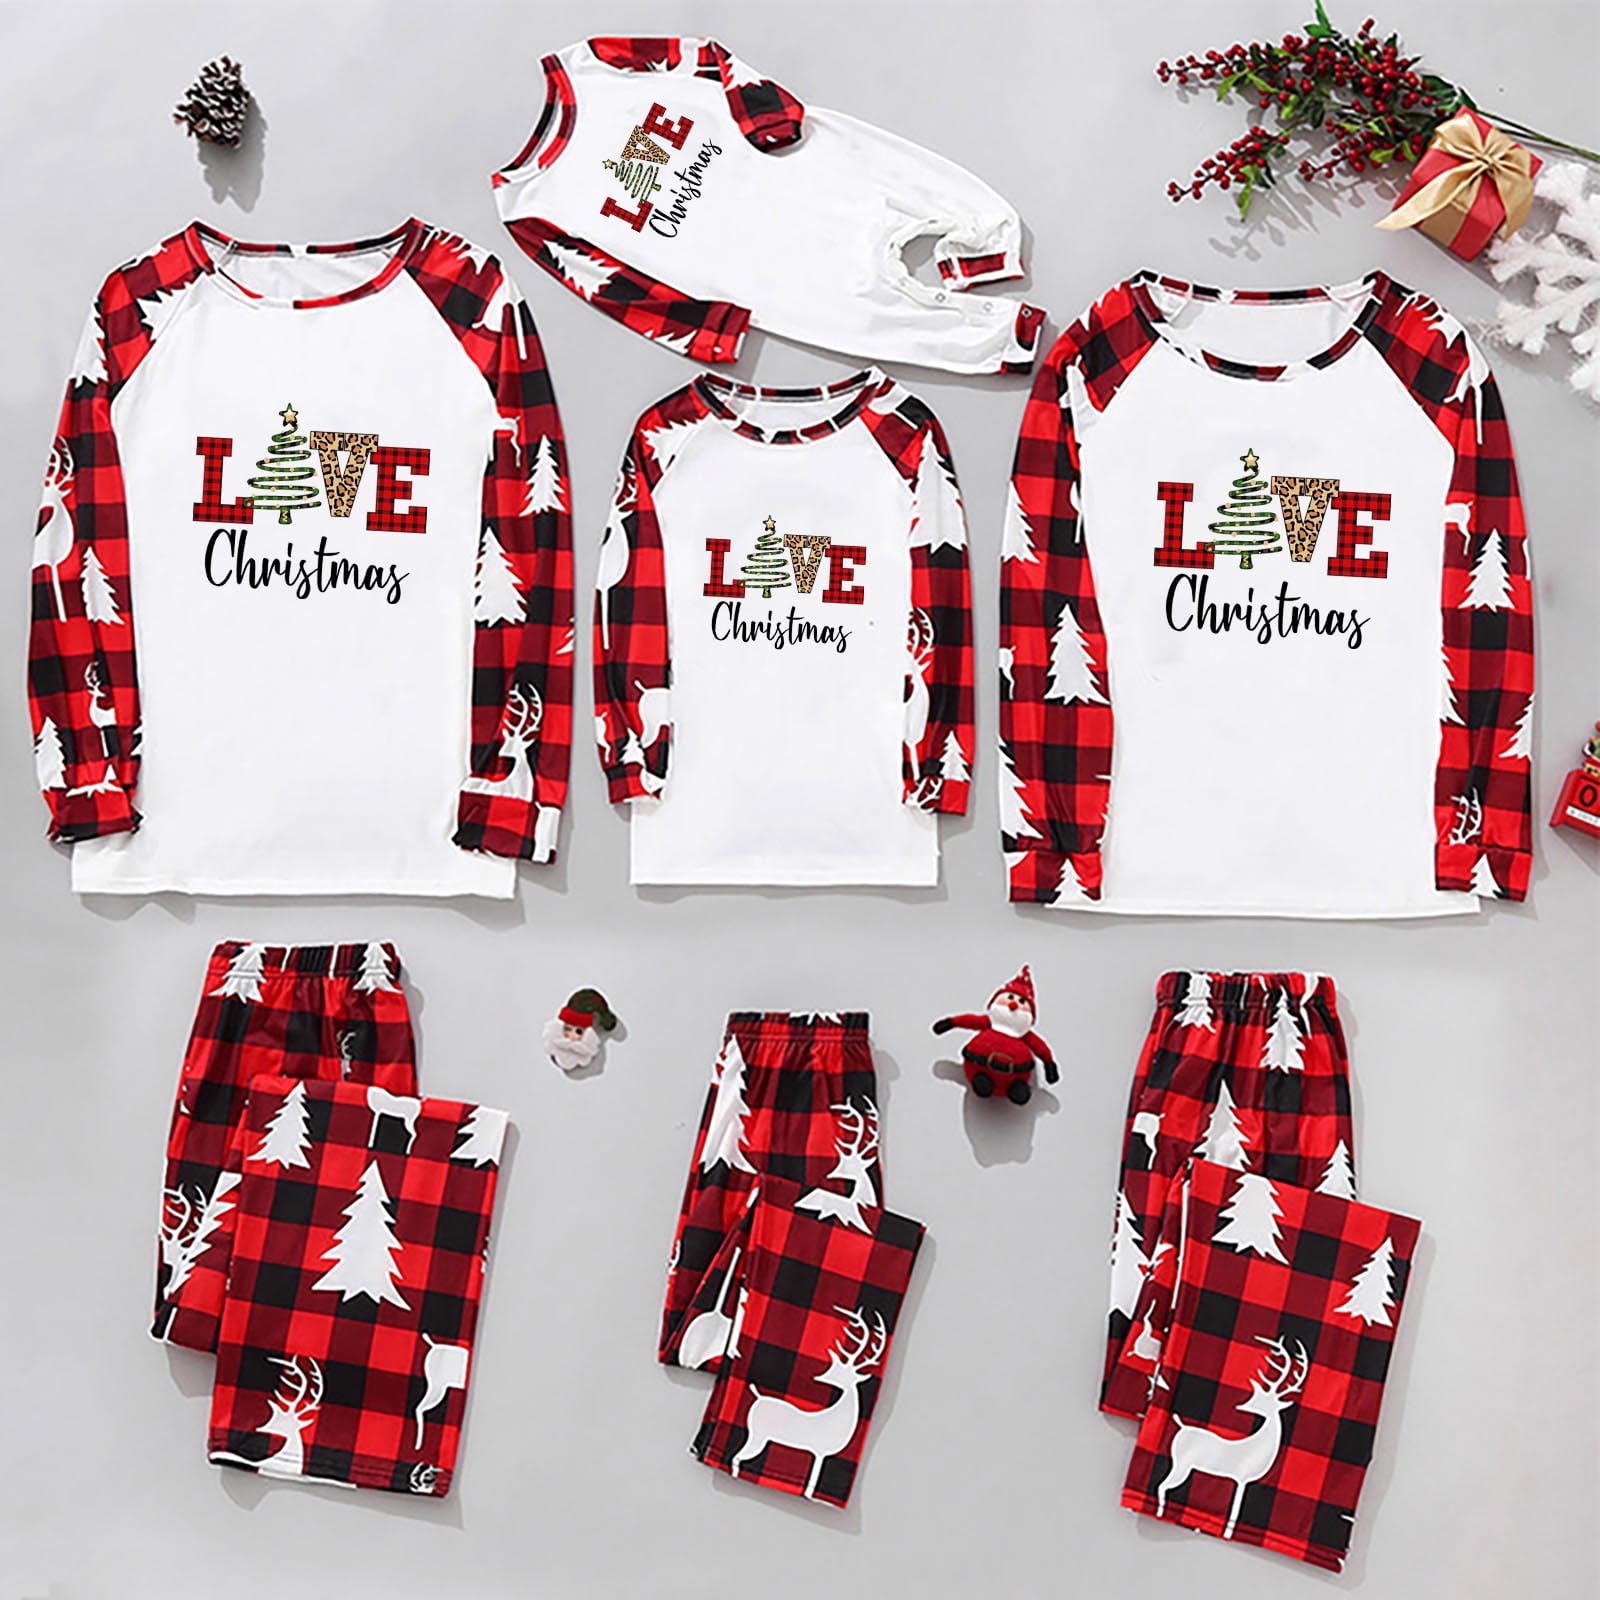 YYDGH Love Christmas Letter Print Pajamas Set for Family Christmas Pjs ...